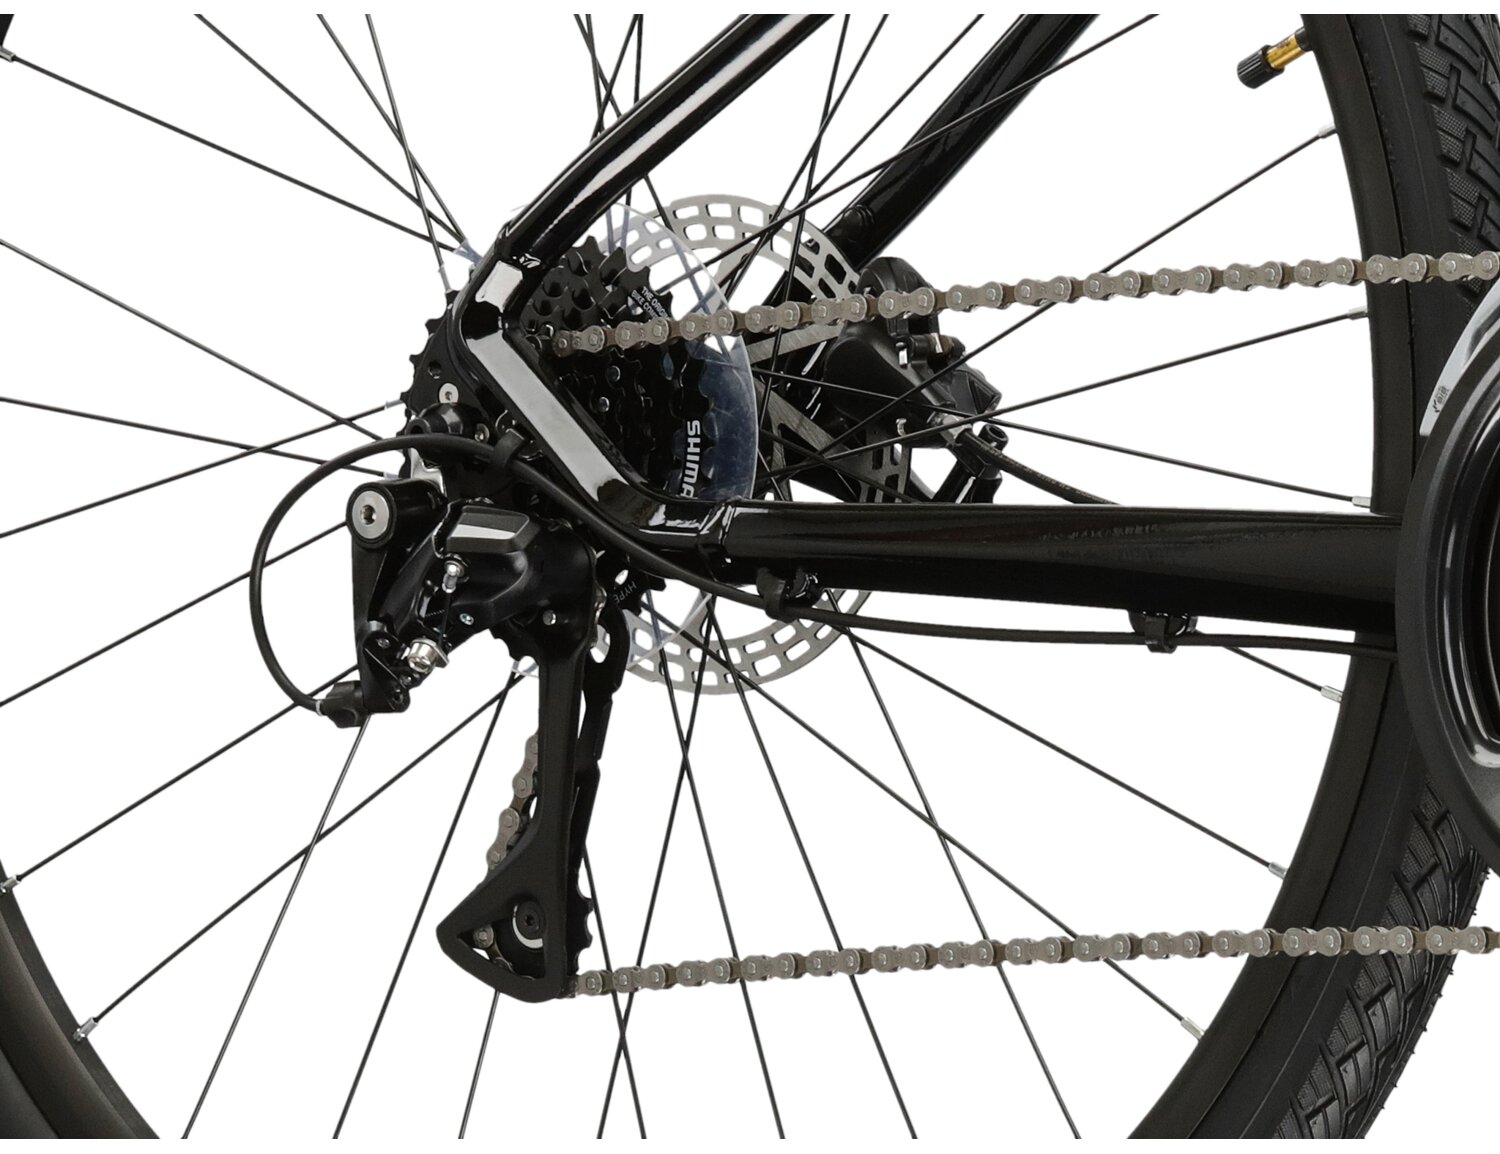  Tylna ośmiobiegowa przerzutka Shimano Acera M3020 oraz hydrauliczne hamulce tarczowe Shimano MT200 w rowerze crossowym damskim KROSS Evado 4.0 